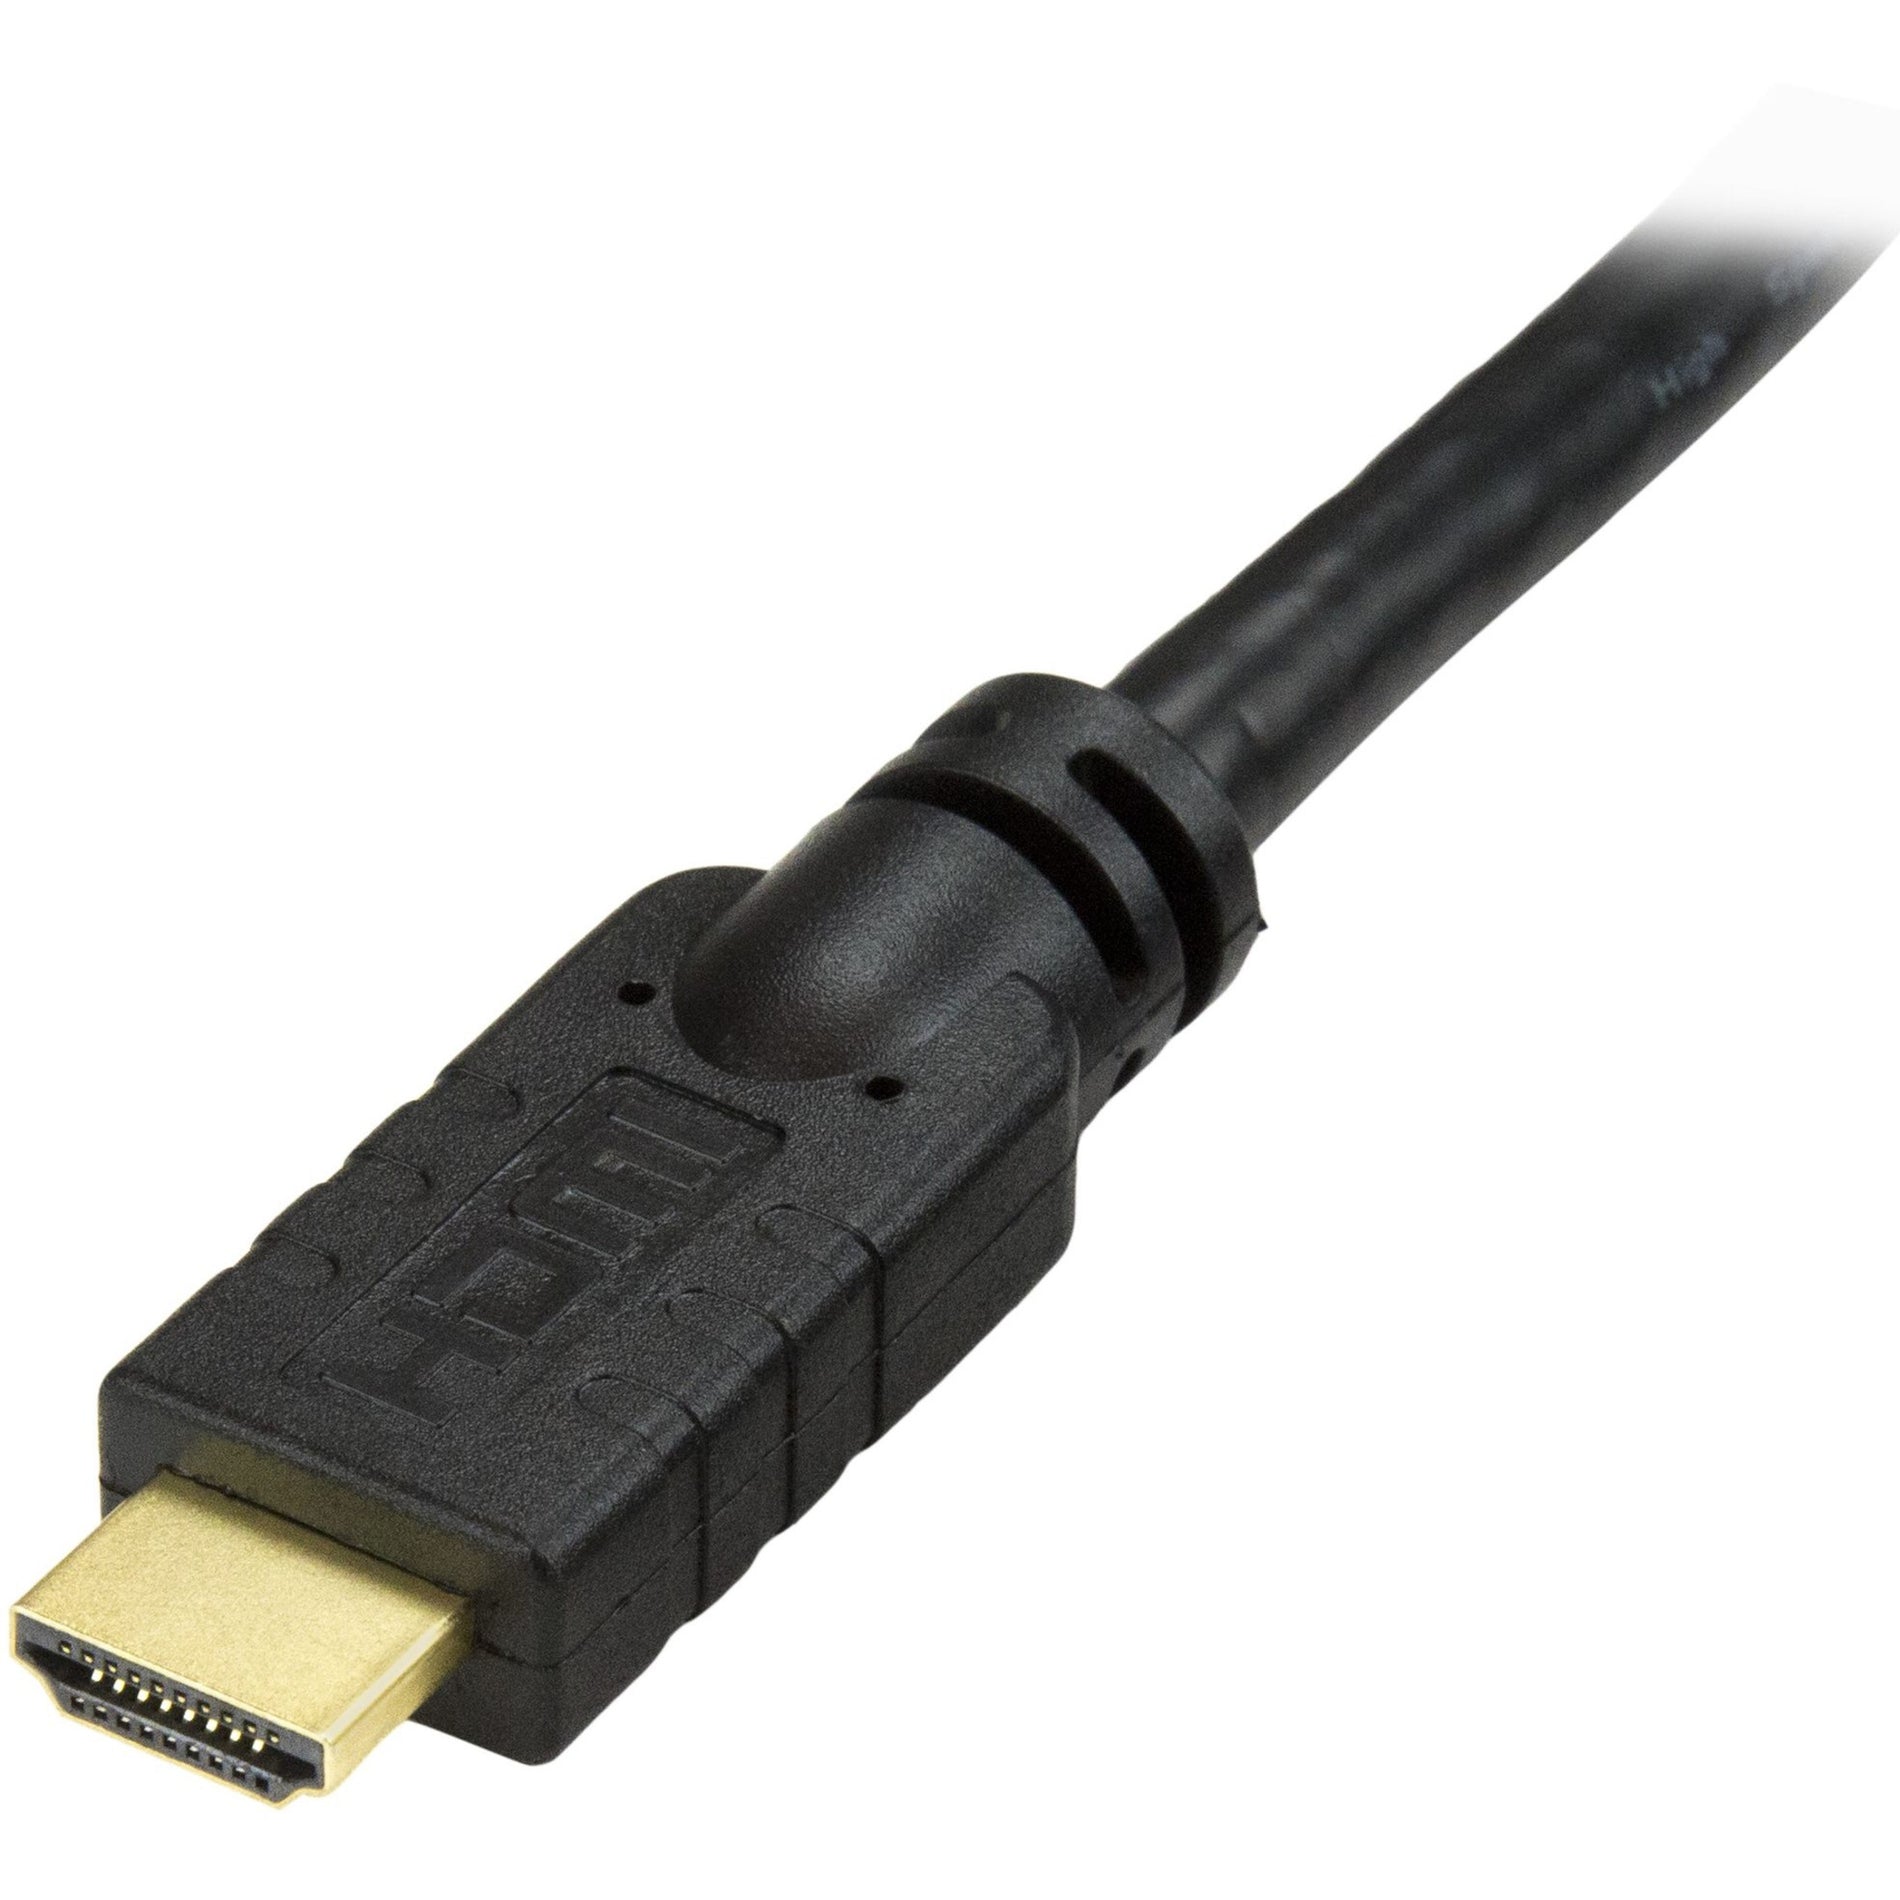 كابل فيديو/صوت HDMI StarTech.com HDMIMM20HS مع إيثرنت ، 20 قدم كابل HDMI عالي السرعة مع دقة Ultra HD 4k x 2k ، مقاوم للتآكل ، موصلات مطلية بالذهب  العلامة التجارية: ستارتك.كوم